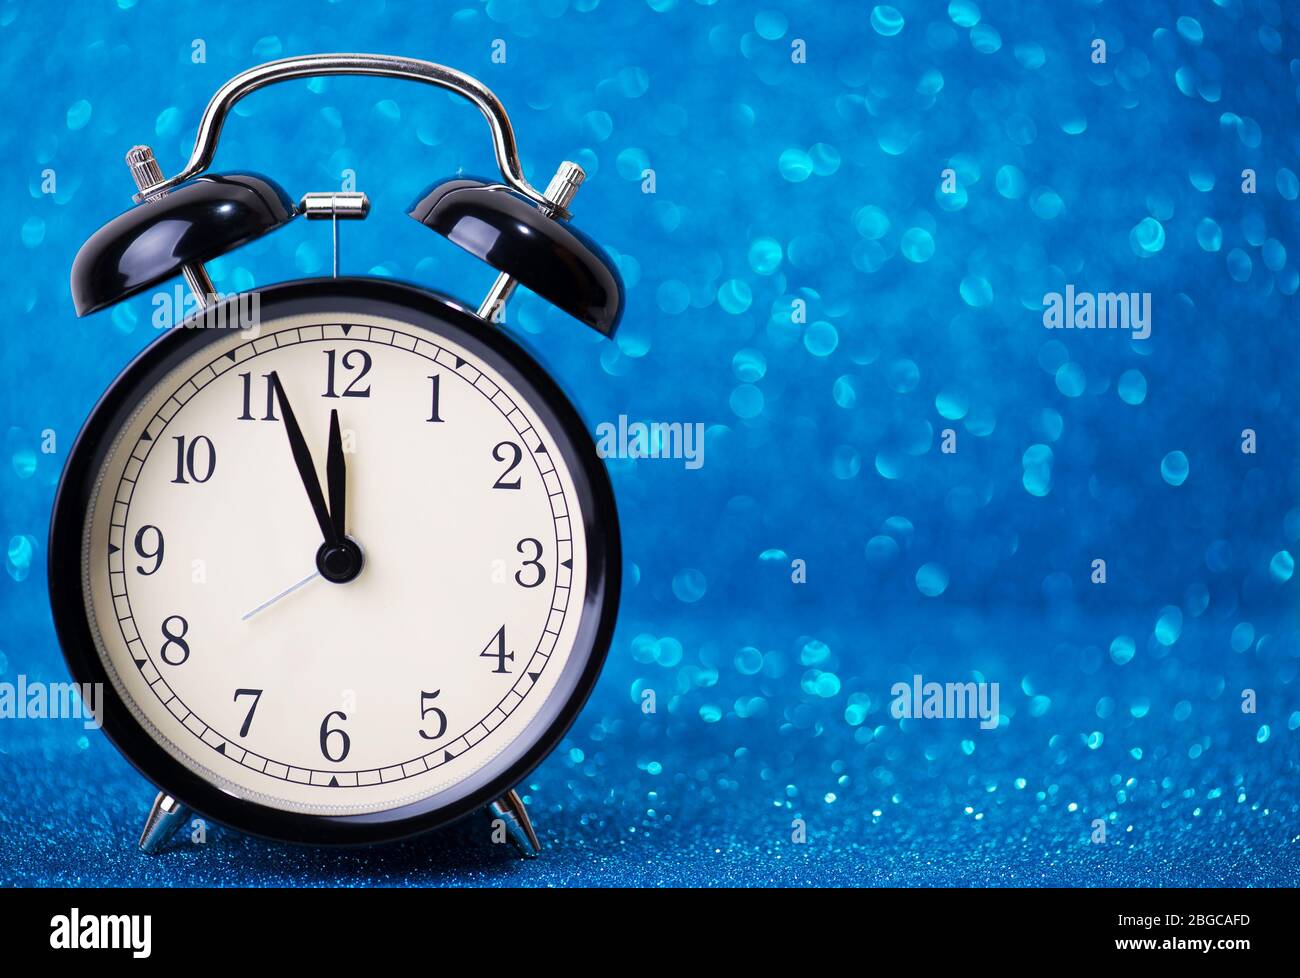 Wecker auf blauem Glitzer-Hintergrund Stockfotografie - Alamy